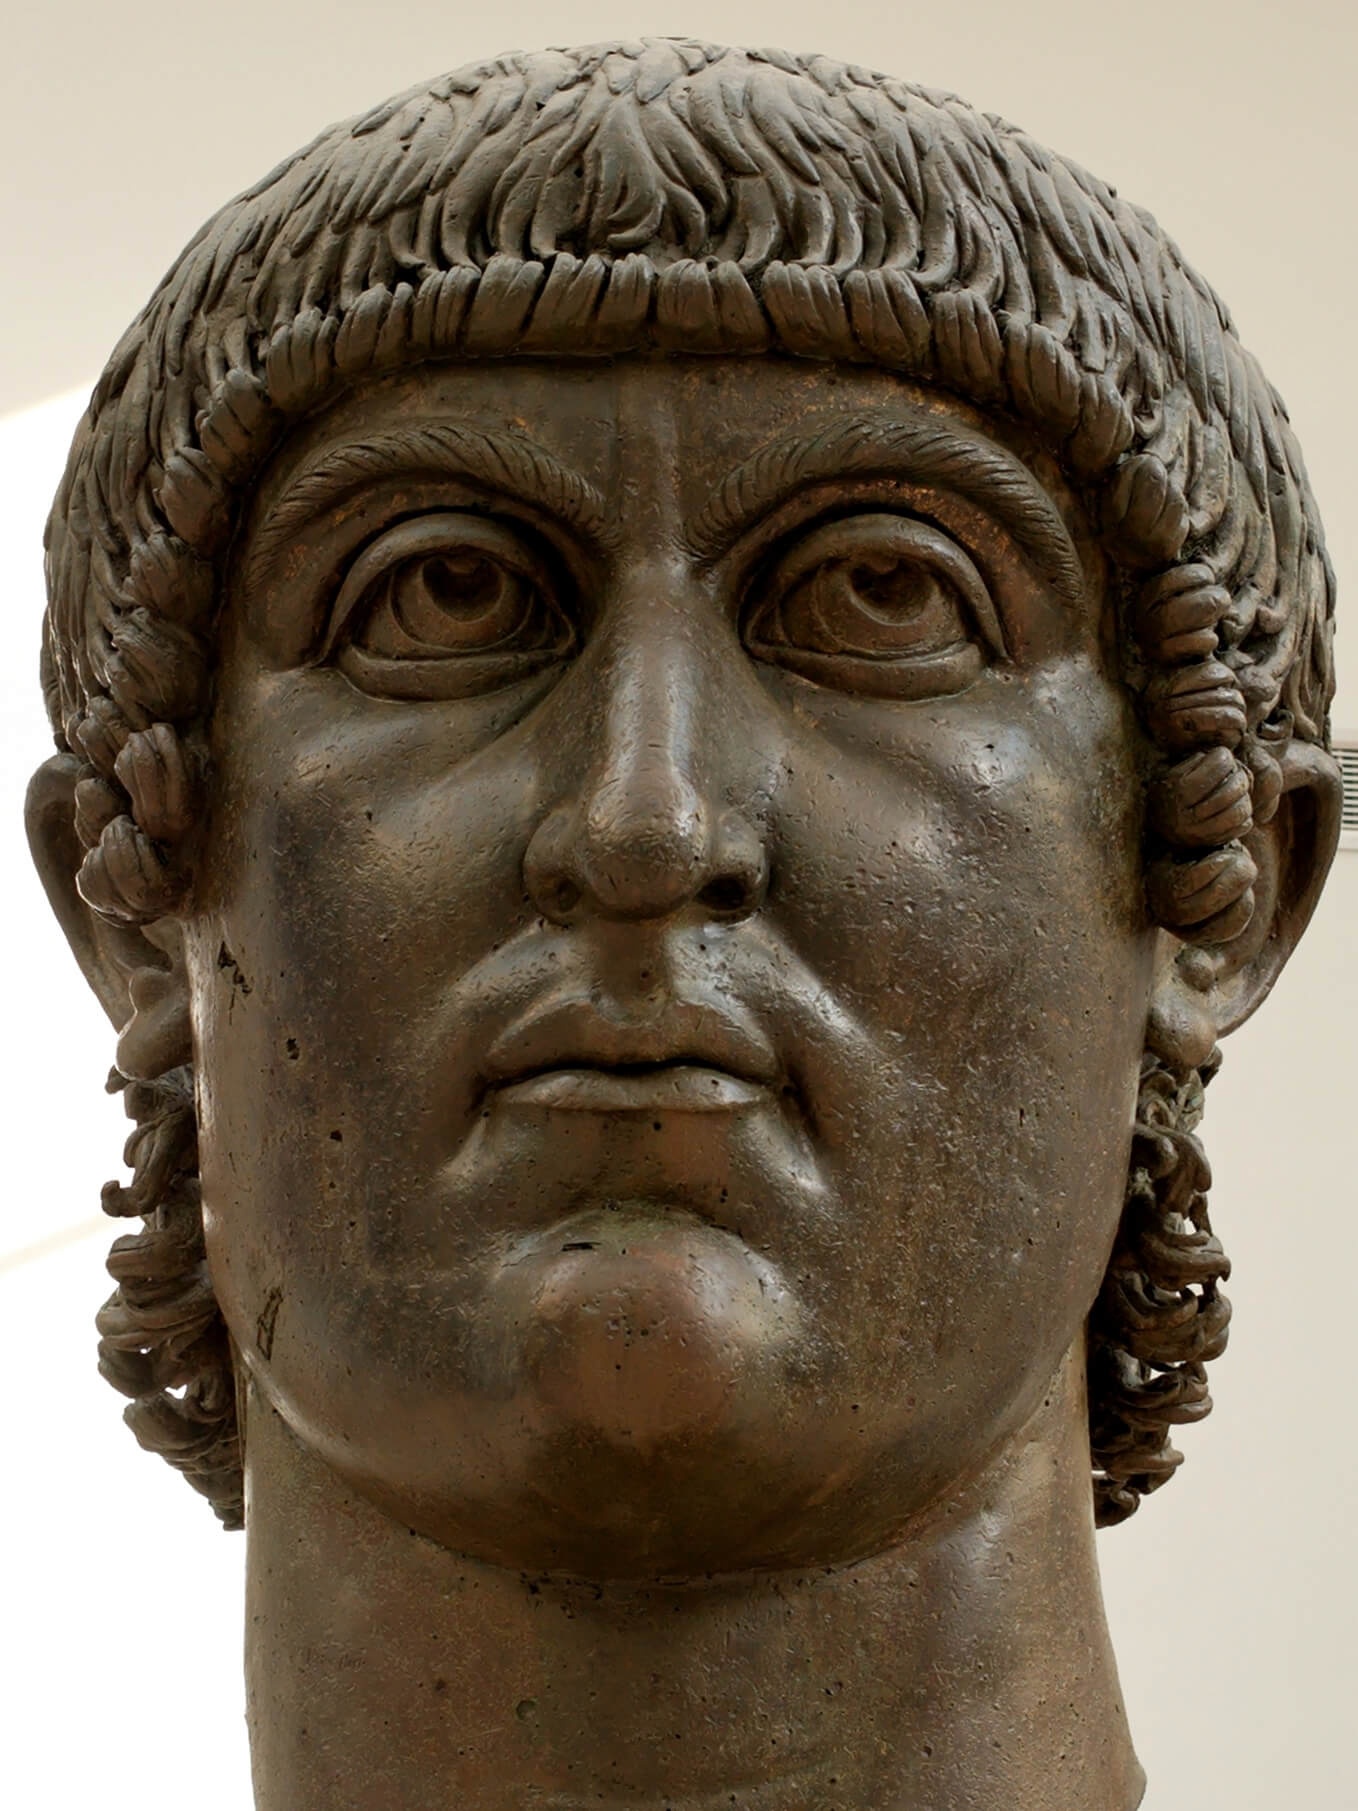 Foto van het hoofd van een bronzen kolossaal beeld van keizer Constantijn I uit de 4e eeuw na Christus.